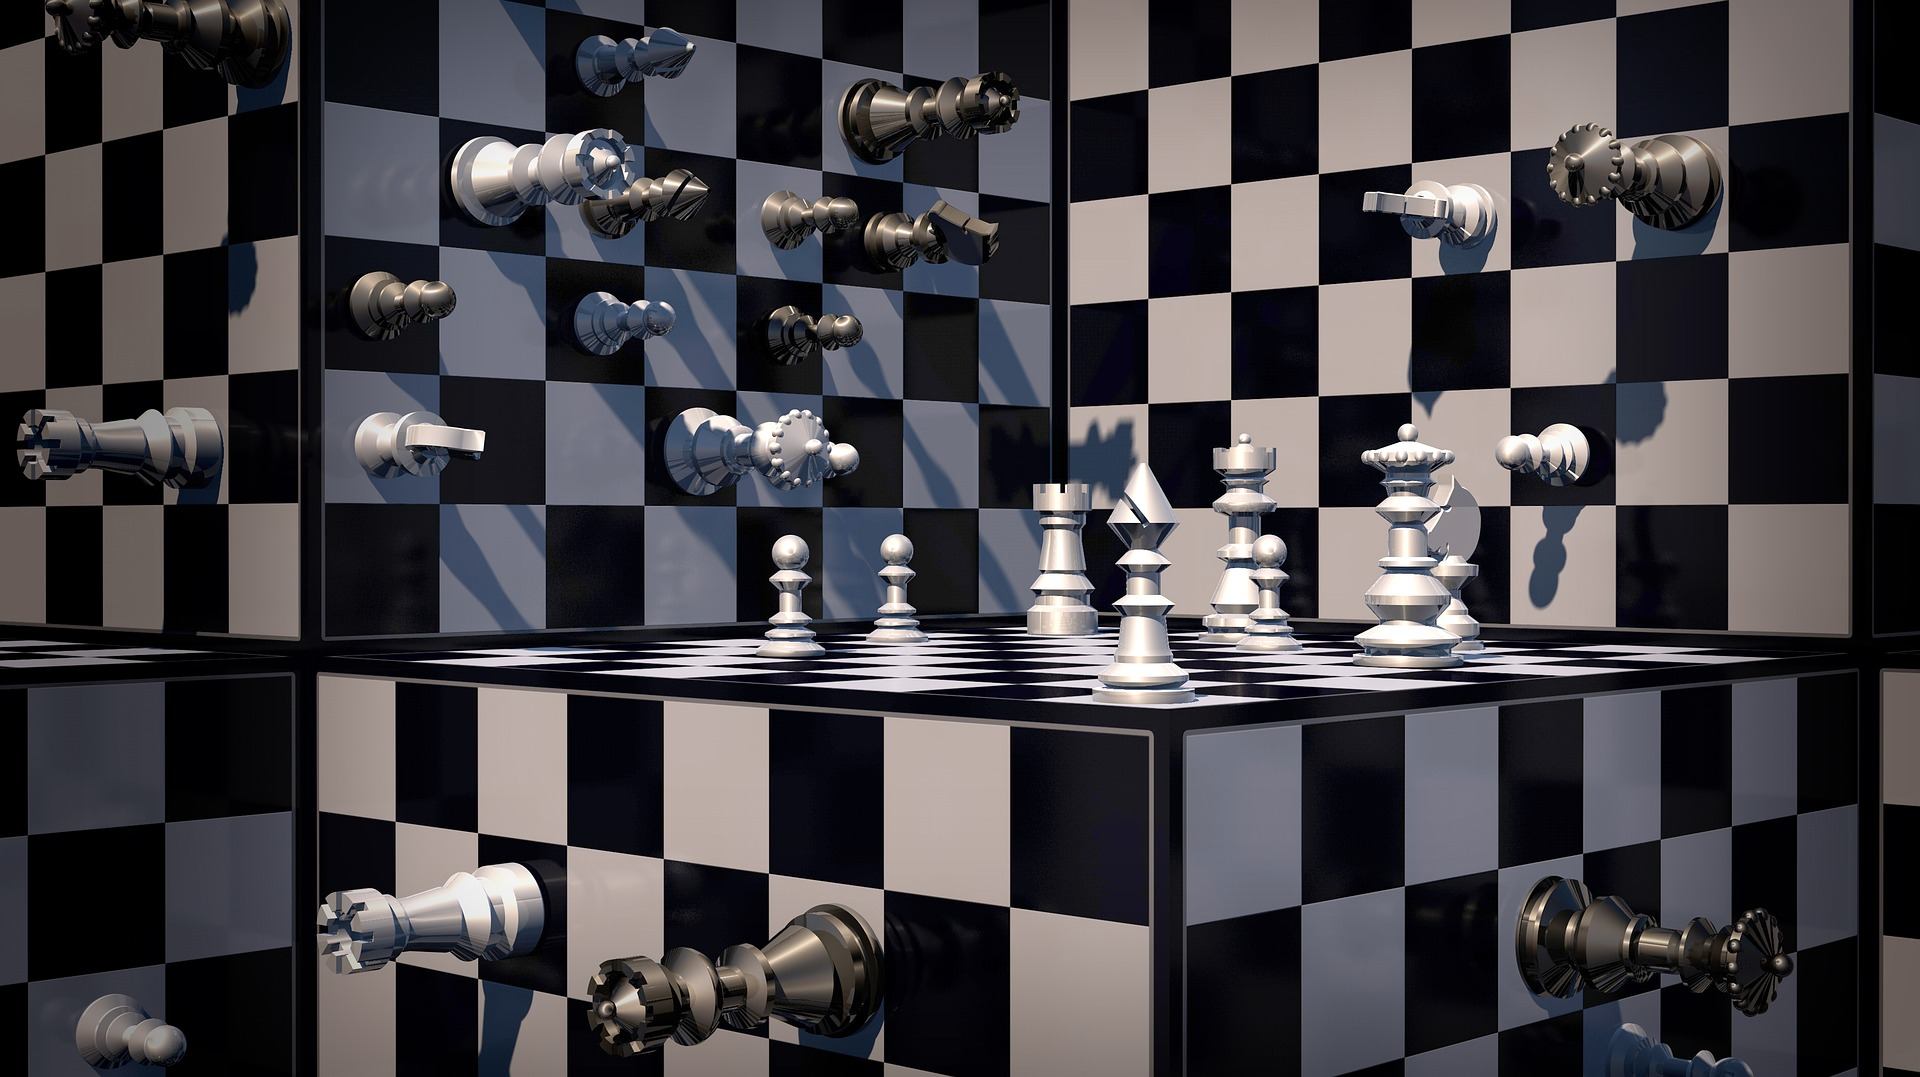 Ein Bild von einem surrealen Schachbrett